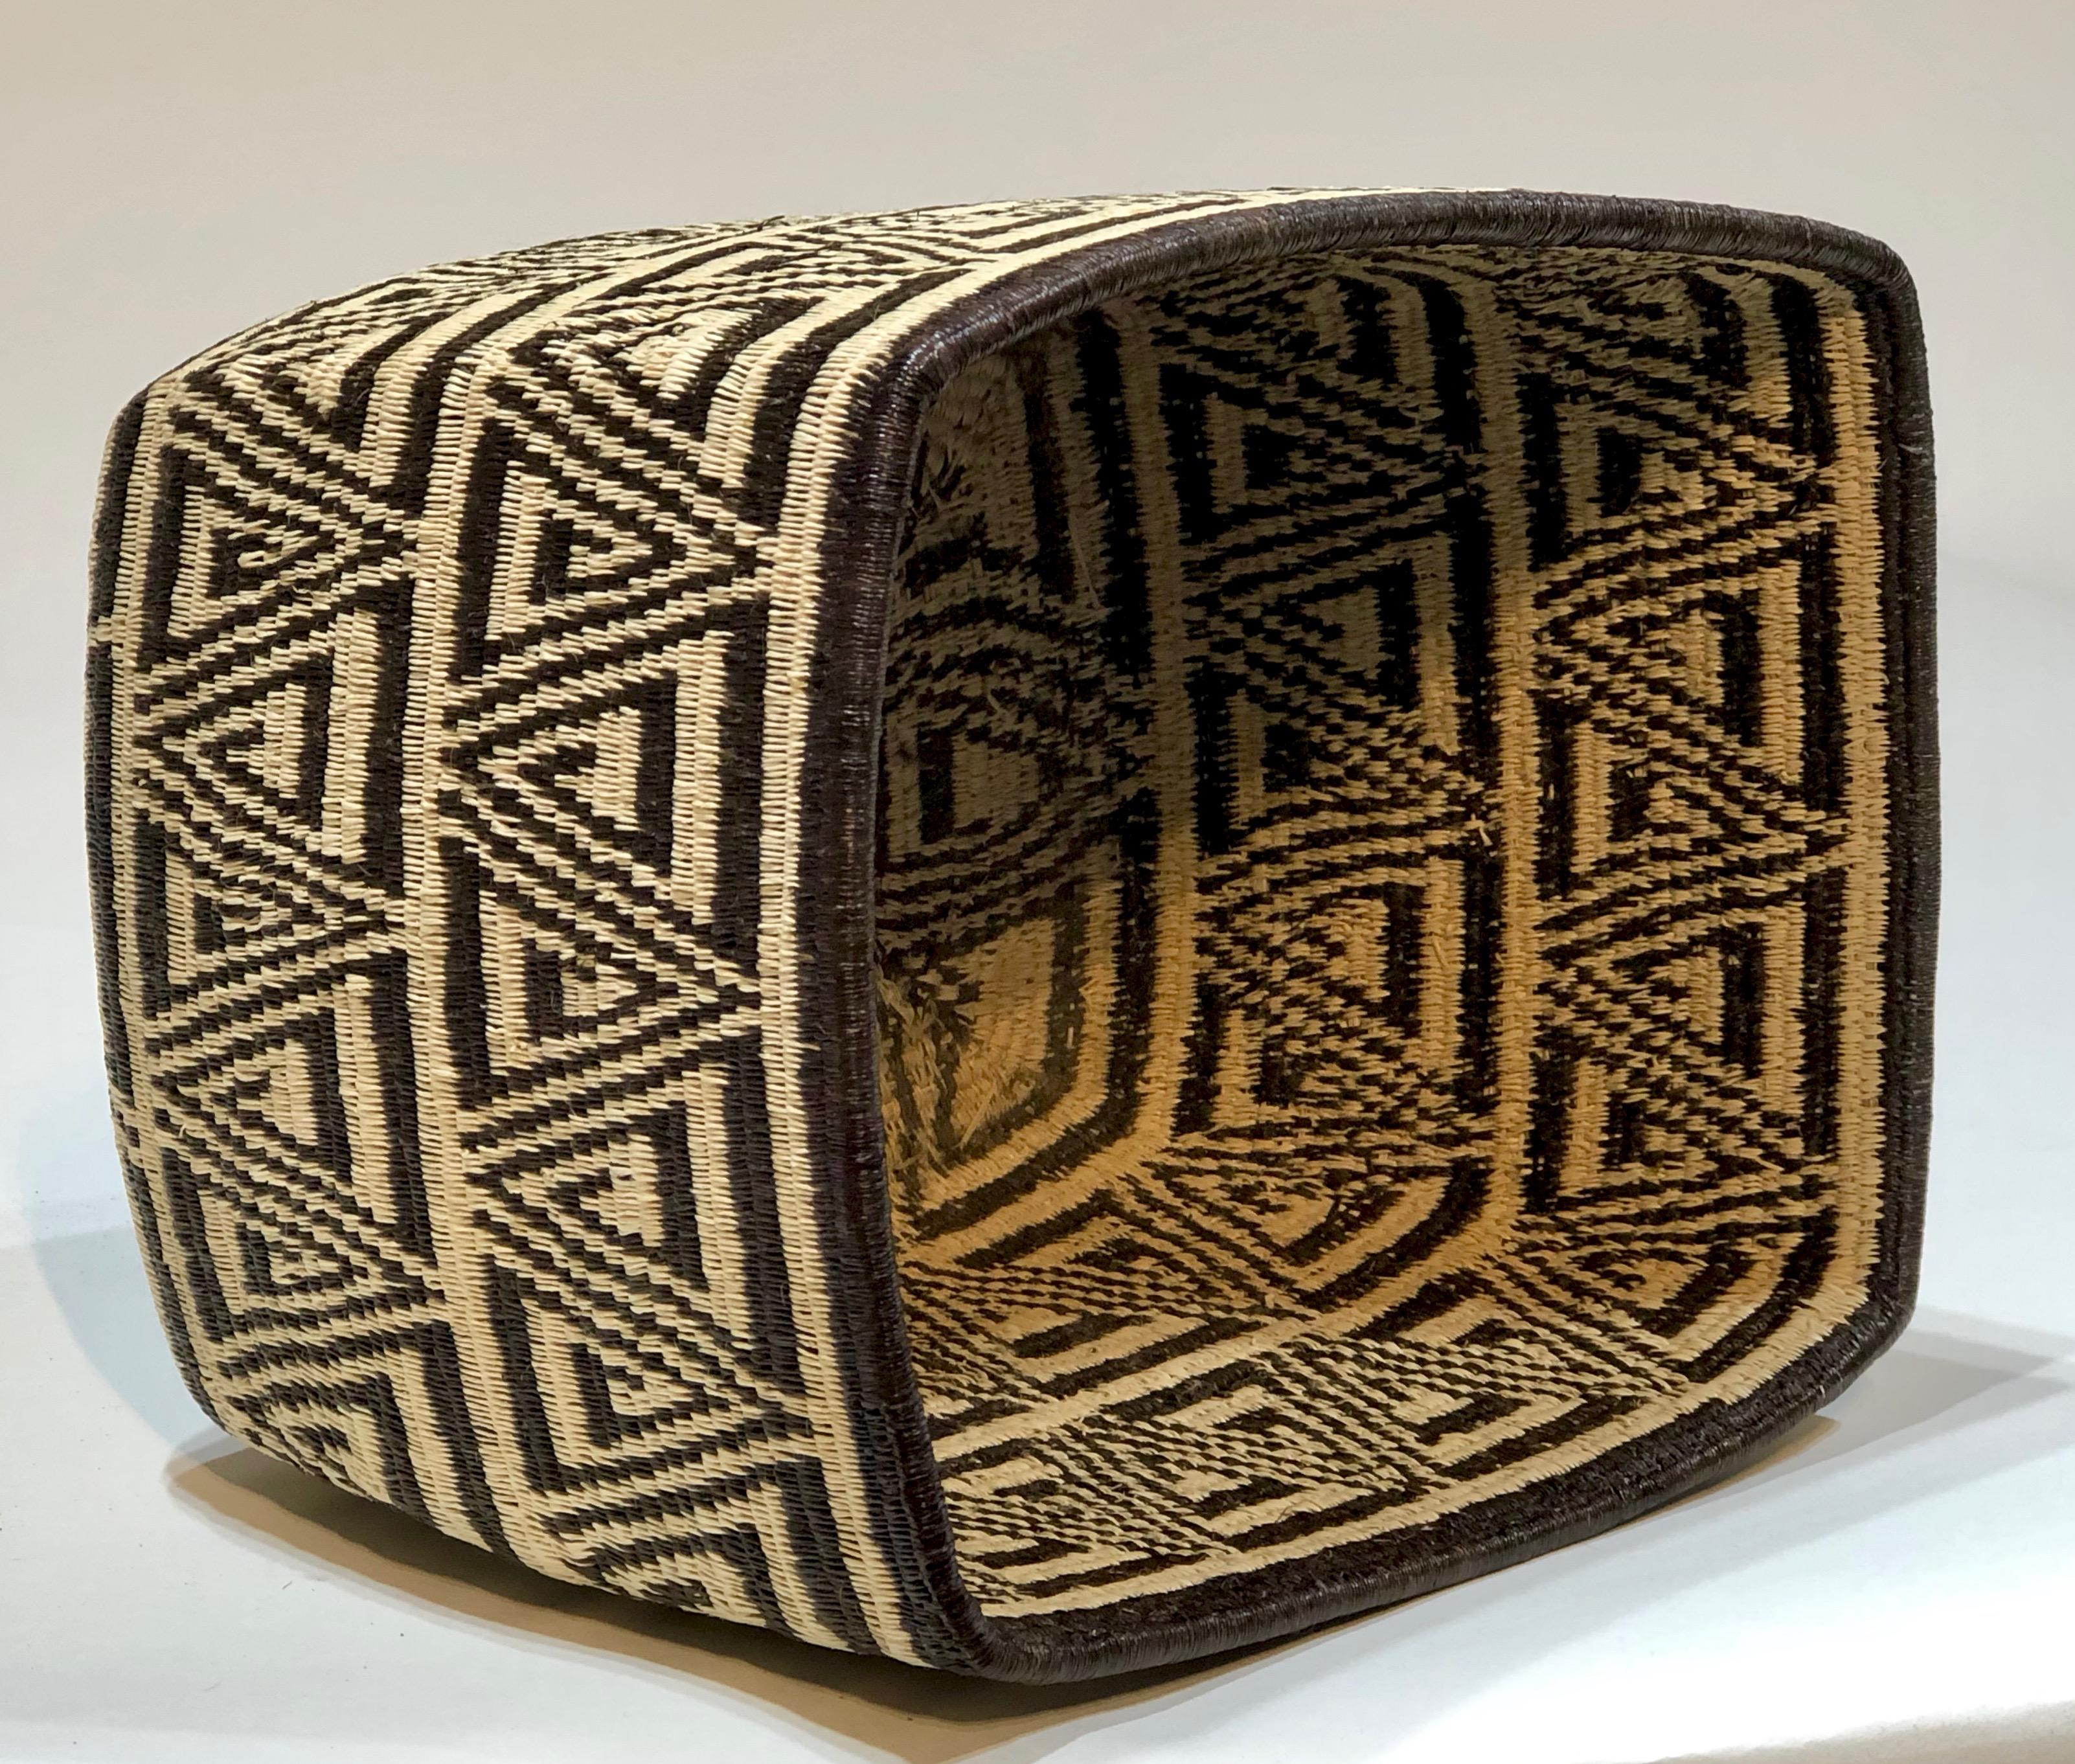 Wounaan Tribe Panama Rainforest Basket schwarz, weiß geometrisches Rechteck
handgewebt, Palmfasern, natürlich gefärbt
Stammeskunstwerk

Die Körbe werden von den Wounaan- und Embera-Indianern aus dem Darien-Regenwald in Panama hergestellt.  Die